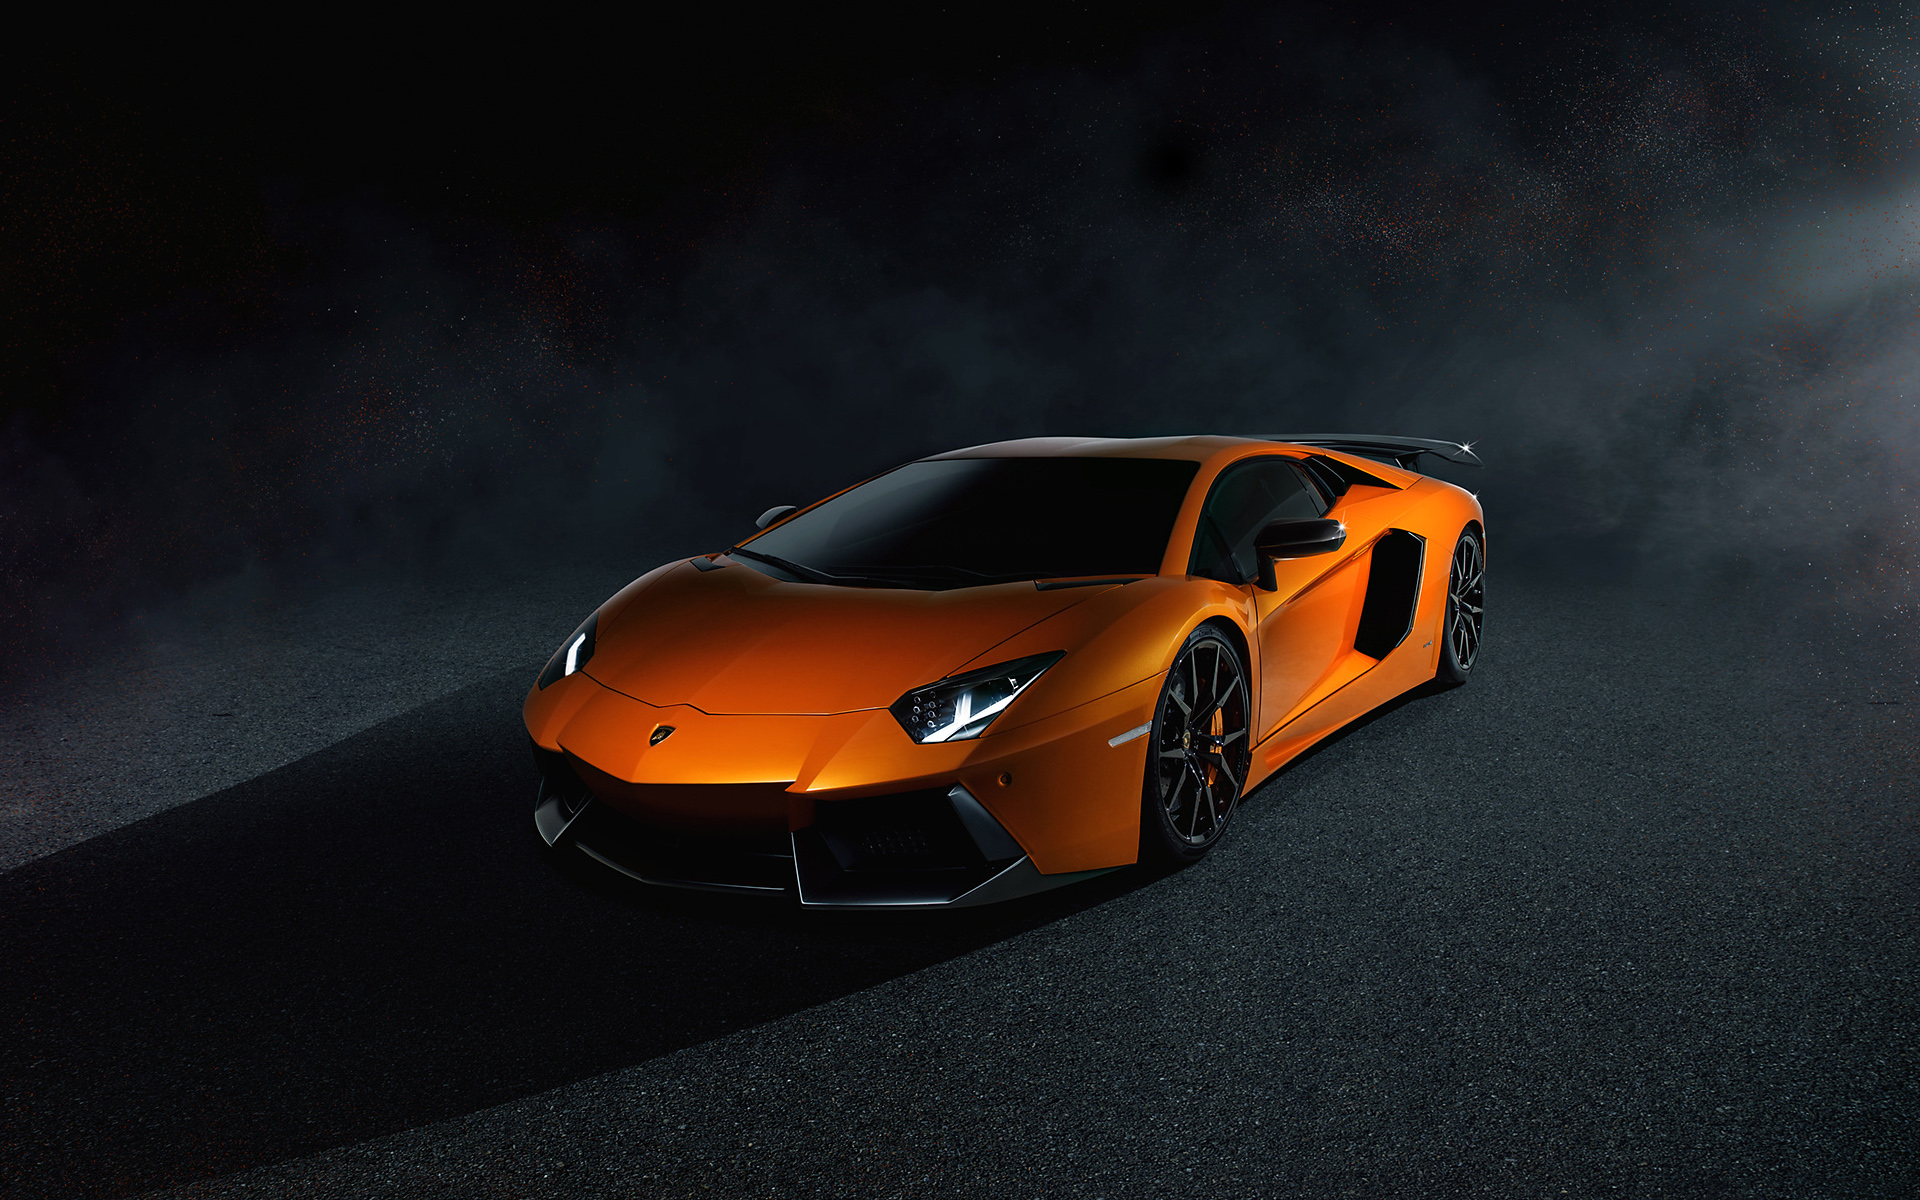 Download mobile wallpaper Lamborghini, Car, Lamborghini Aventador, Vehicles, Lamborghini Aventador Lp 700 4, Orange Car for free.